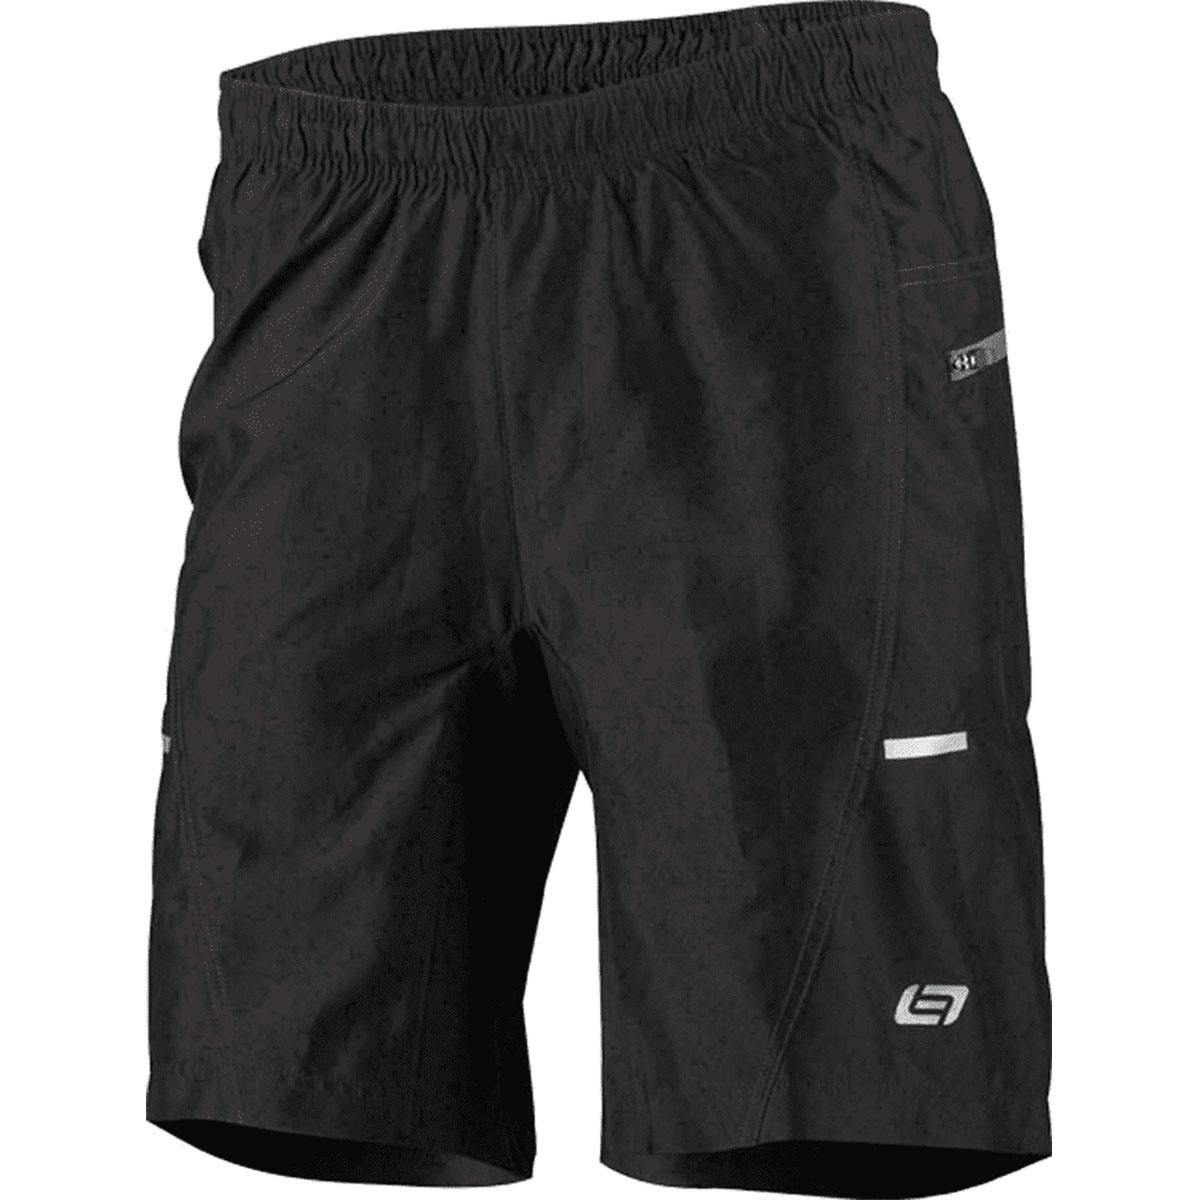 Bellwether Ultralight Men's Bike Shorts - Black - Small